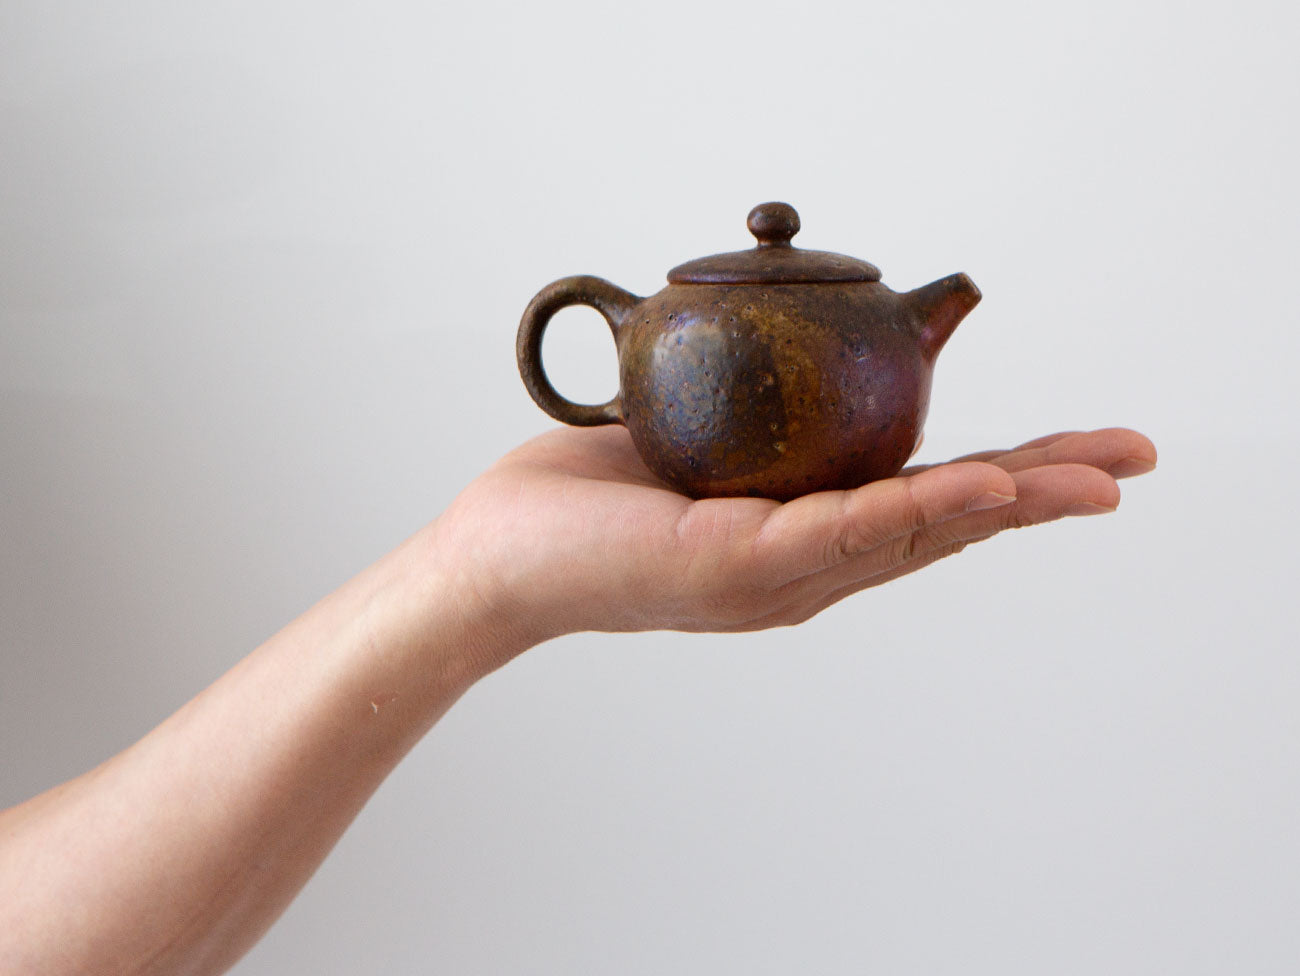 Wood-fired Teapot. Enwonwu. Liao Guo Hua.